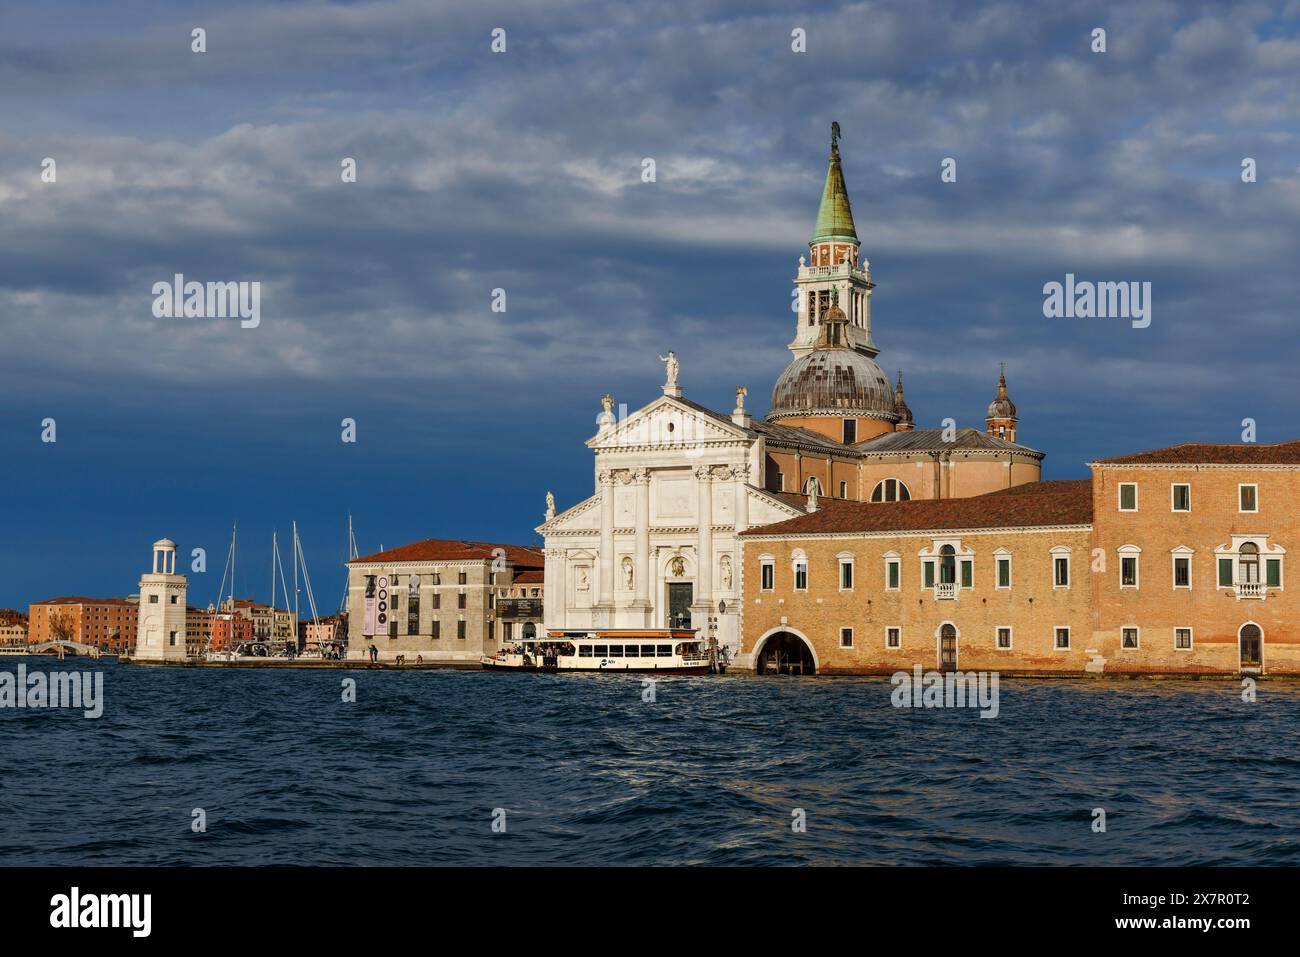 Venise, Province de Venise, région de Vénétie, Italie. L'isola ou île de San Giorgio et l'église du même nom. Venise est classée au patrimoine mondial de l'UNESCO Banque D'Images